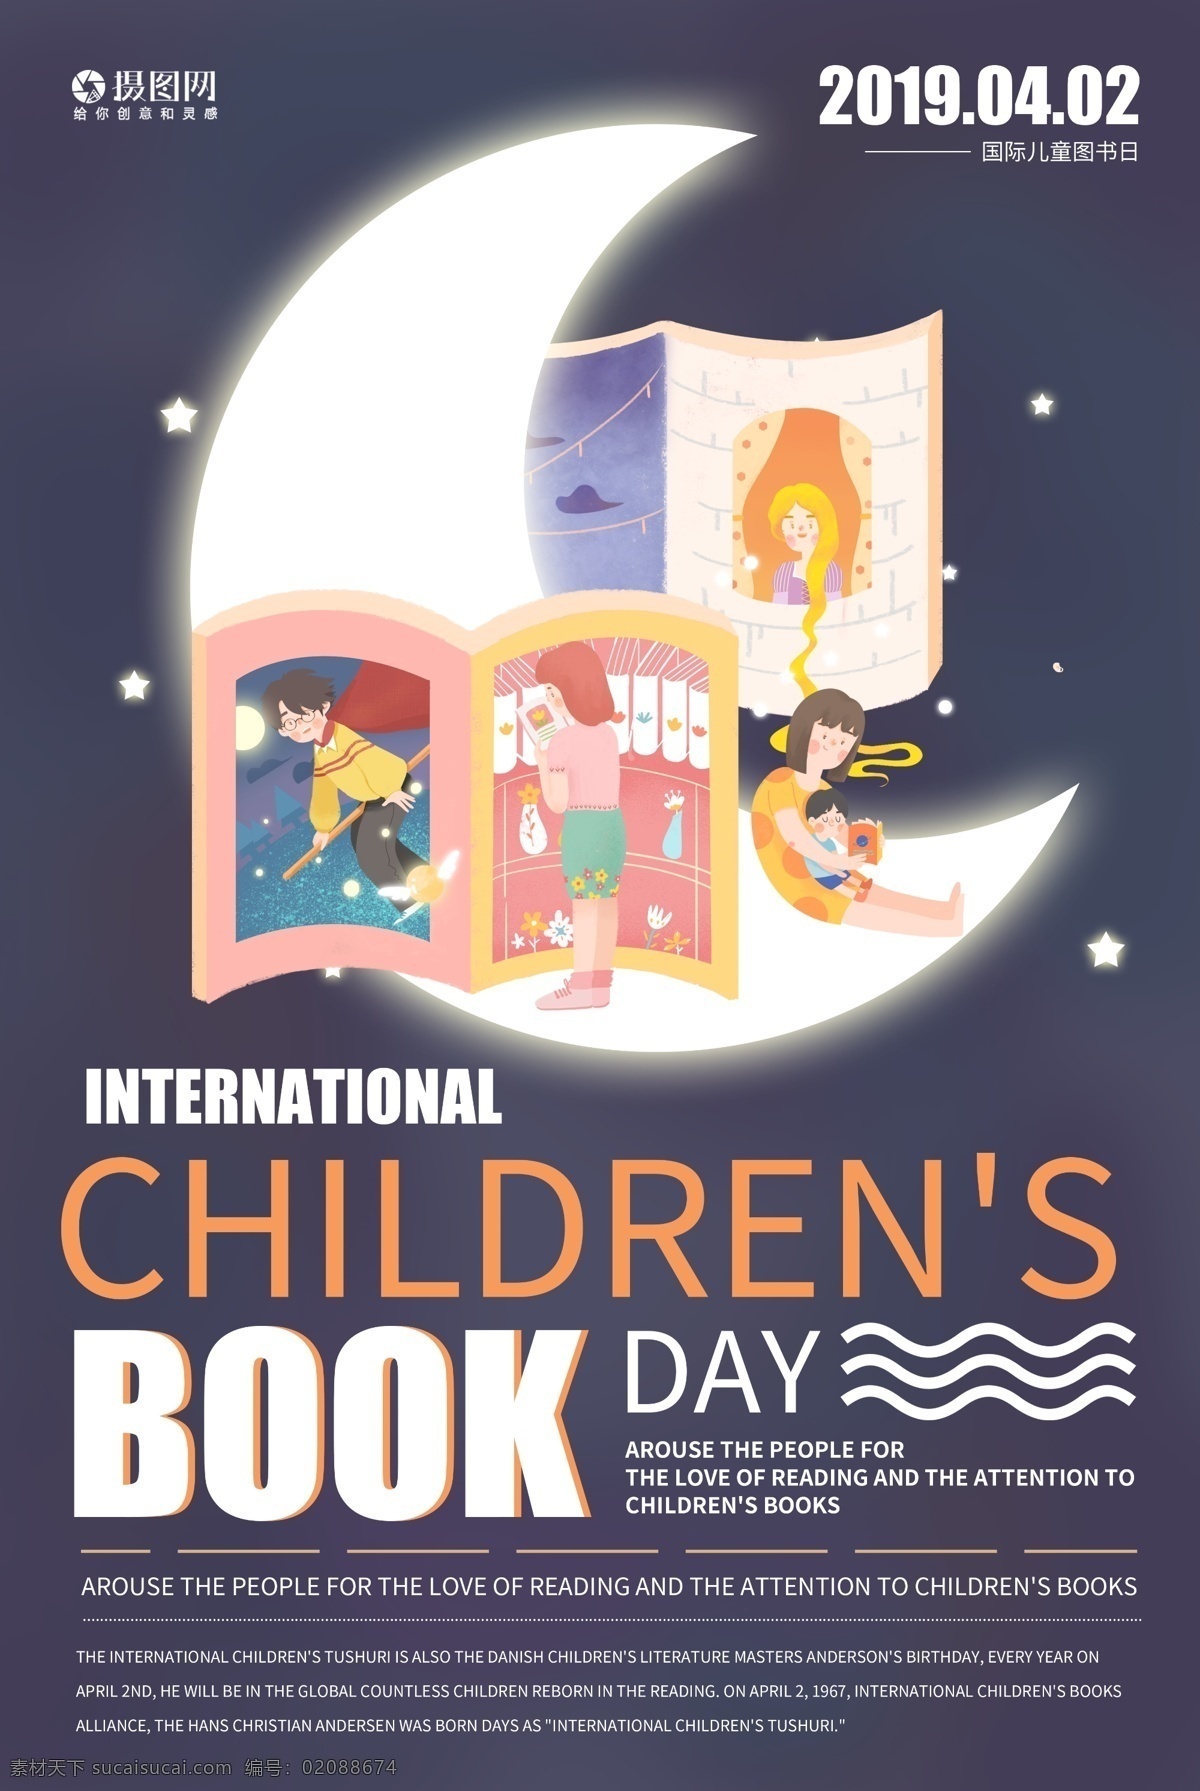 国际 儿童 图书 日 纯 英文 海报 读书 童话书 儿童读书日 童话故事 故事书 孩子 纯英文 英文海报